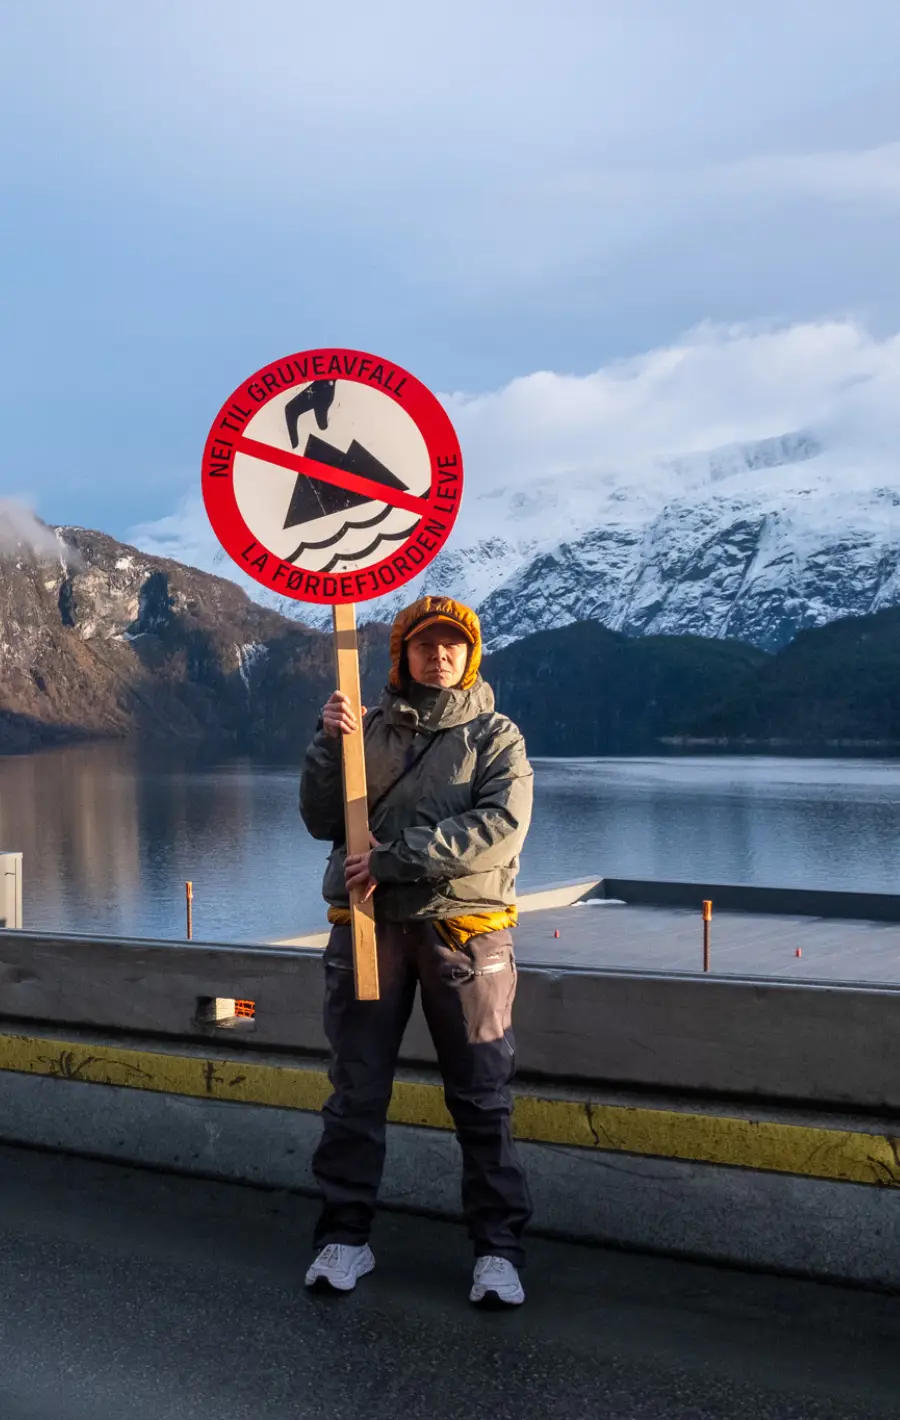 Heidi Hattestein har marsjert åleine frå Naustdal til Vevring, i protest mot gruvedumping i Førdefjorden. I dette personlege essayet reflekterer ho over lengselen etter å bli høyrt.